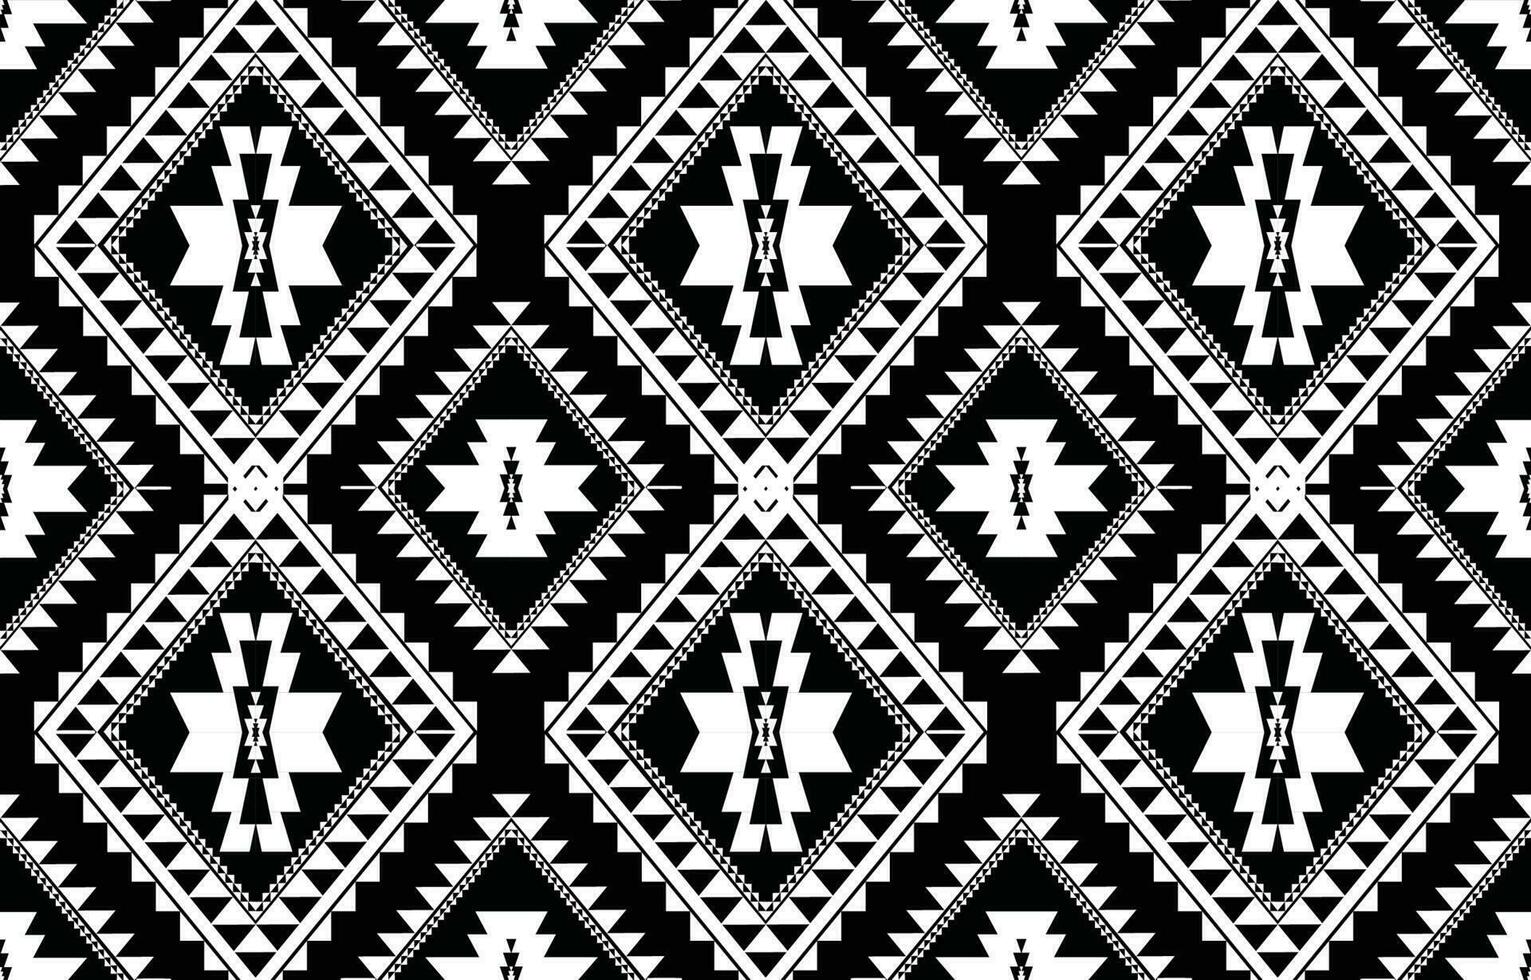 vetor de padrão étnico geométrico. africano, americano, mexicano, motivo asteca ocidental listrado e padrão boêmio. projetado para fundo, papel de parede, impressão, tapete, embrulho, azulejo, batik.vector illustratoin.